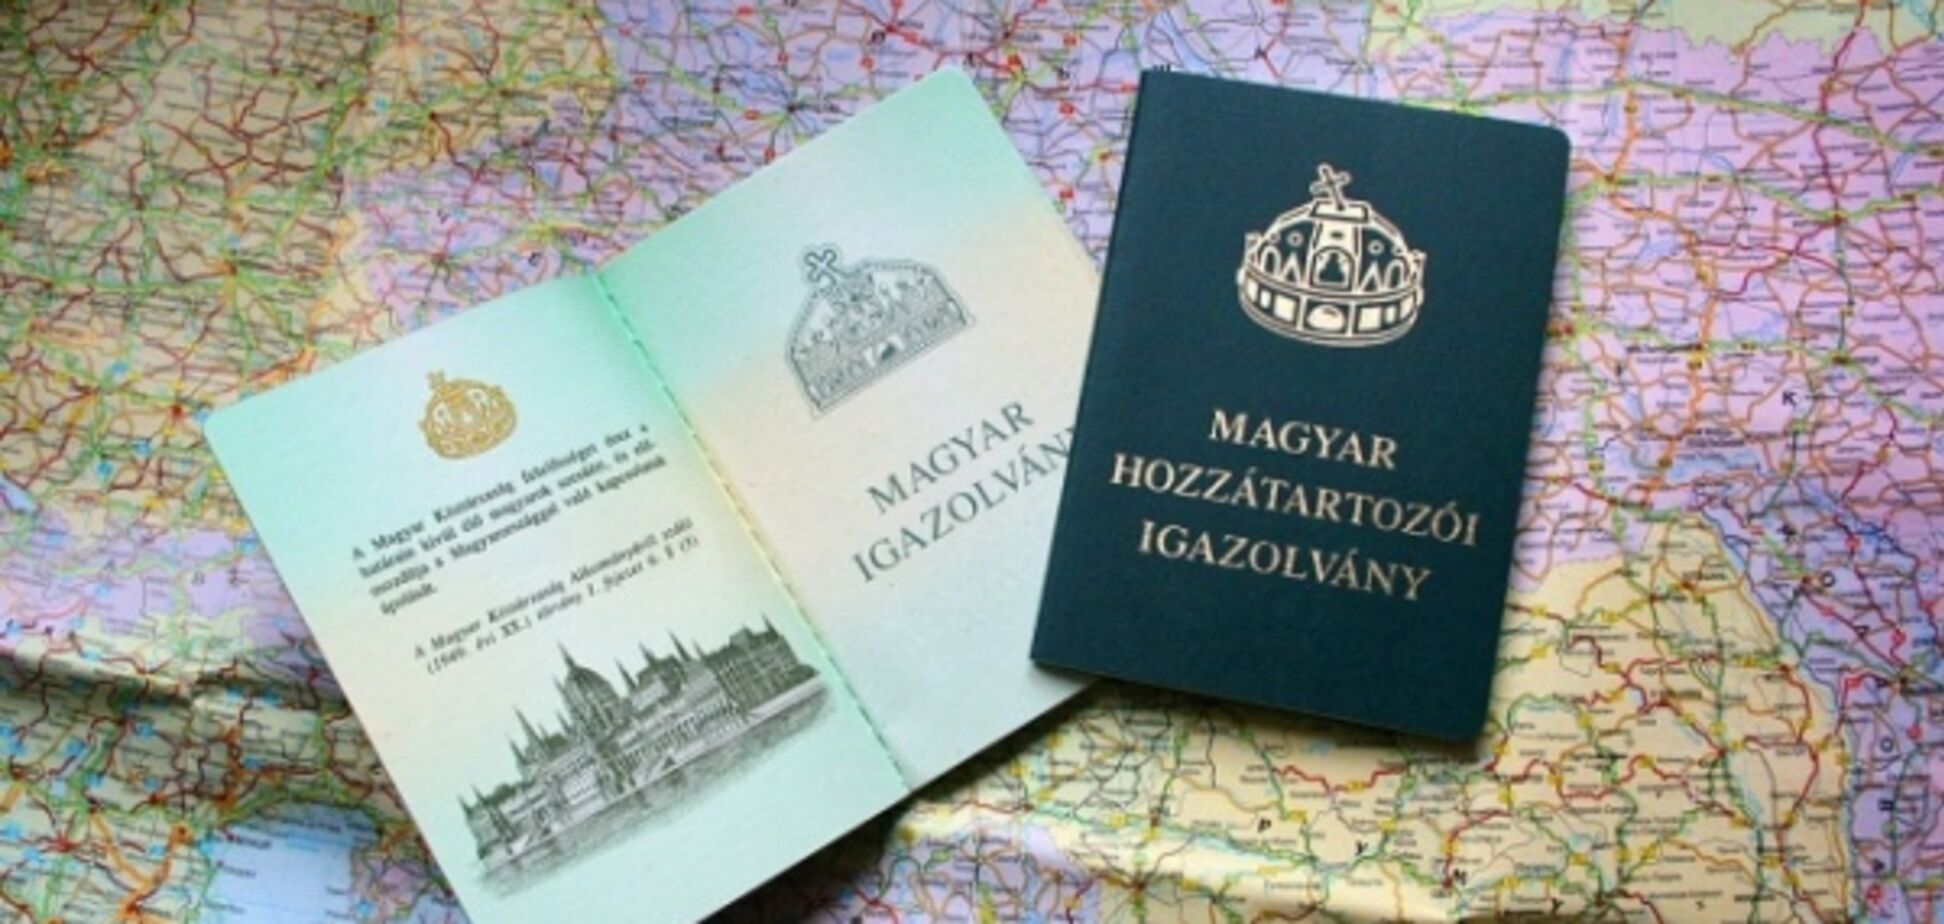 Це були не паспорти: розсекречені подробиці ''угорського'' скандалу на Закарпатті